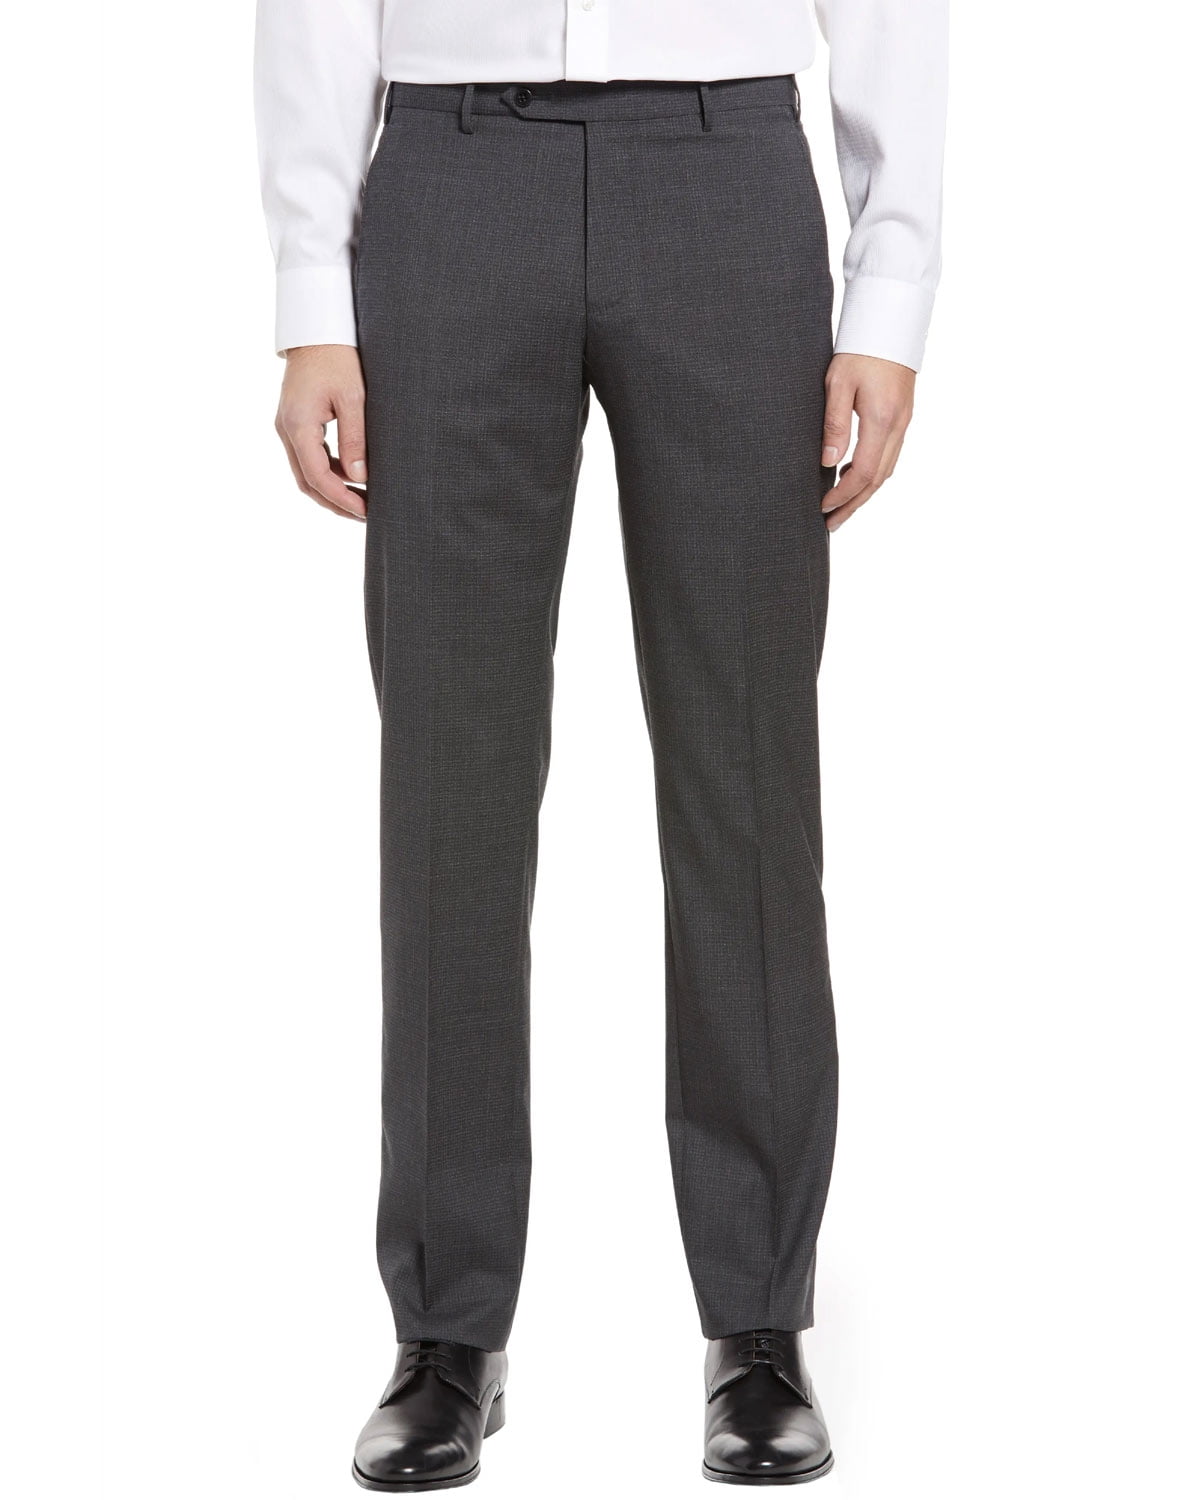 Elegant skinny gray check pants for men Exibit